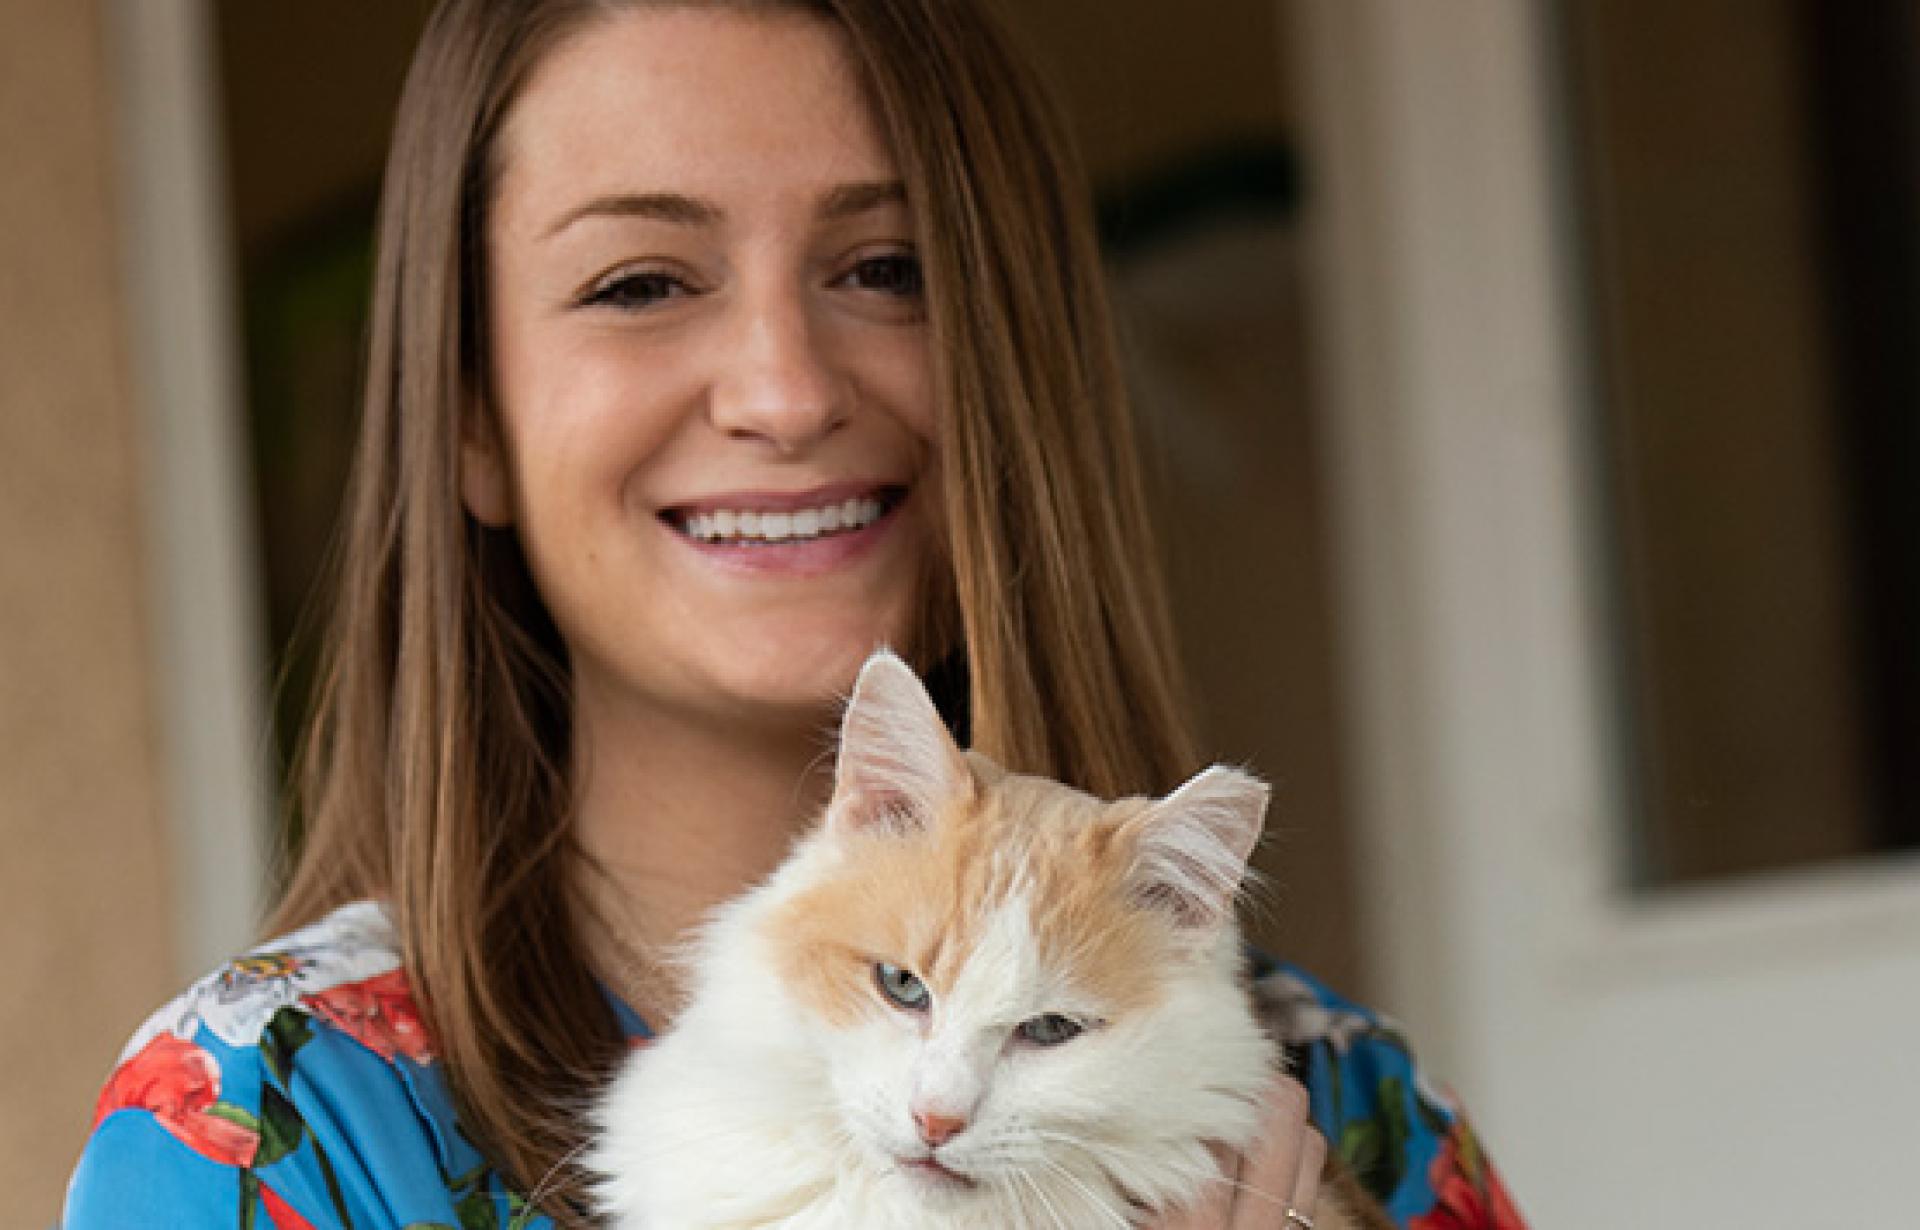 Elise Traub holding a white and orange cat